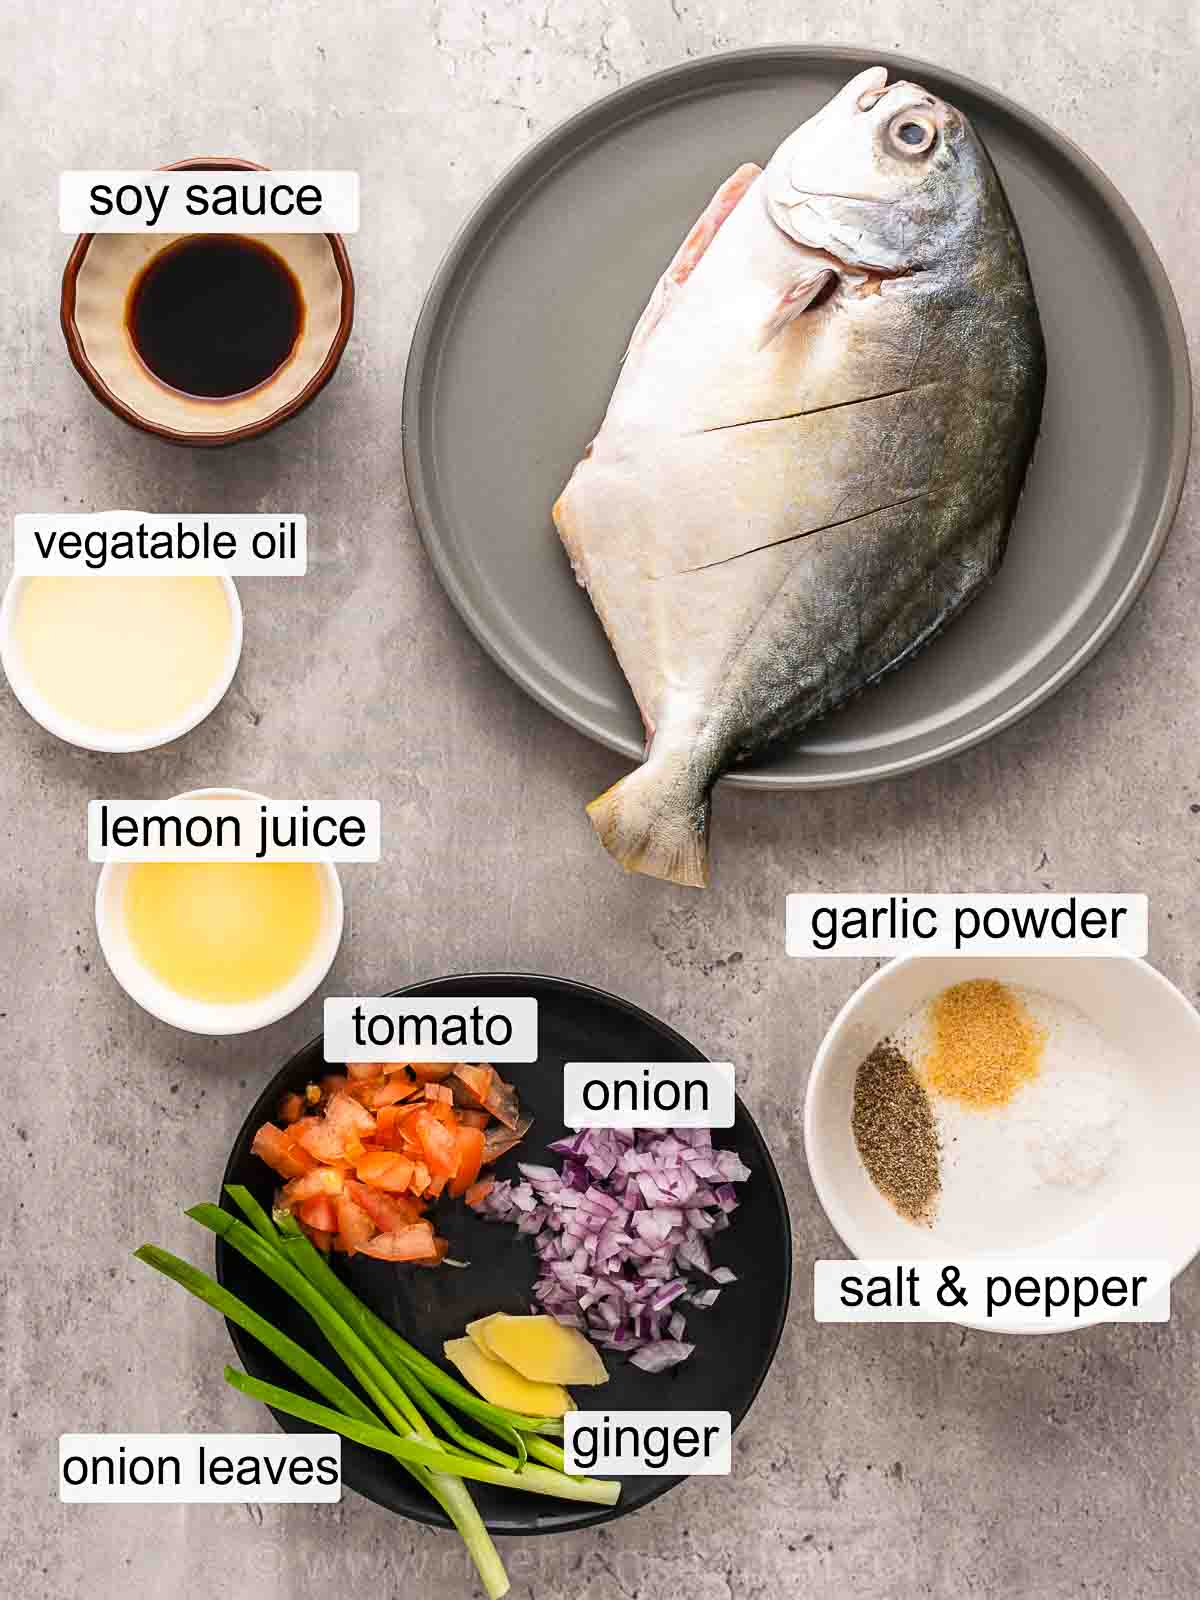 pompano (pomfret fish), vegetable oil, onion, tomato, ginger, lemon juice, salt and pepper.